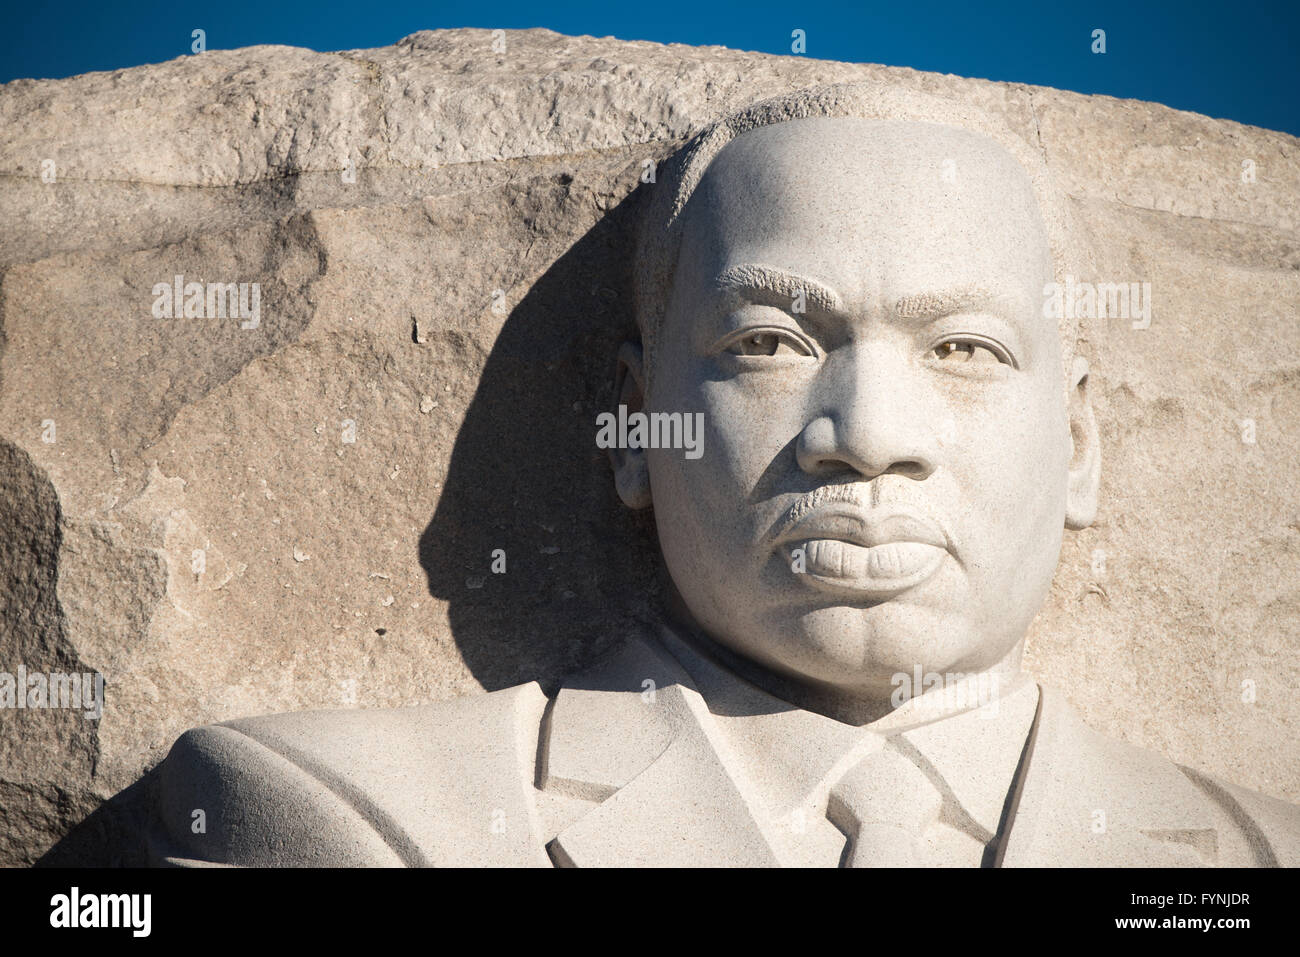 WASHINGTON DC, USA - das im Jahr 2011 eröffnete der Martin Luther King, Jr. Memorial das Civil Rights Leader und die Bürgerrechtsbewegung erinnert. Es steht am Ufer des Tidal Basin in Washington DC. Sein Herzstück ist eine große Statue von Dr. König, das von Lei Ellen Orth geschnitzt wurde. Stockfoto